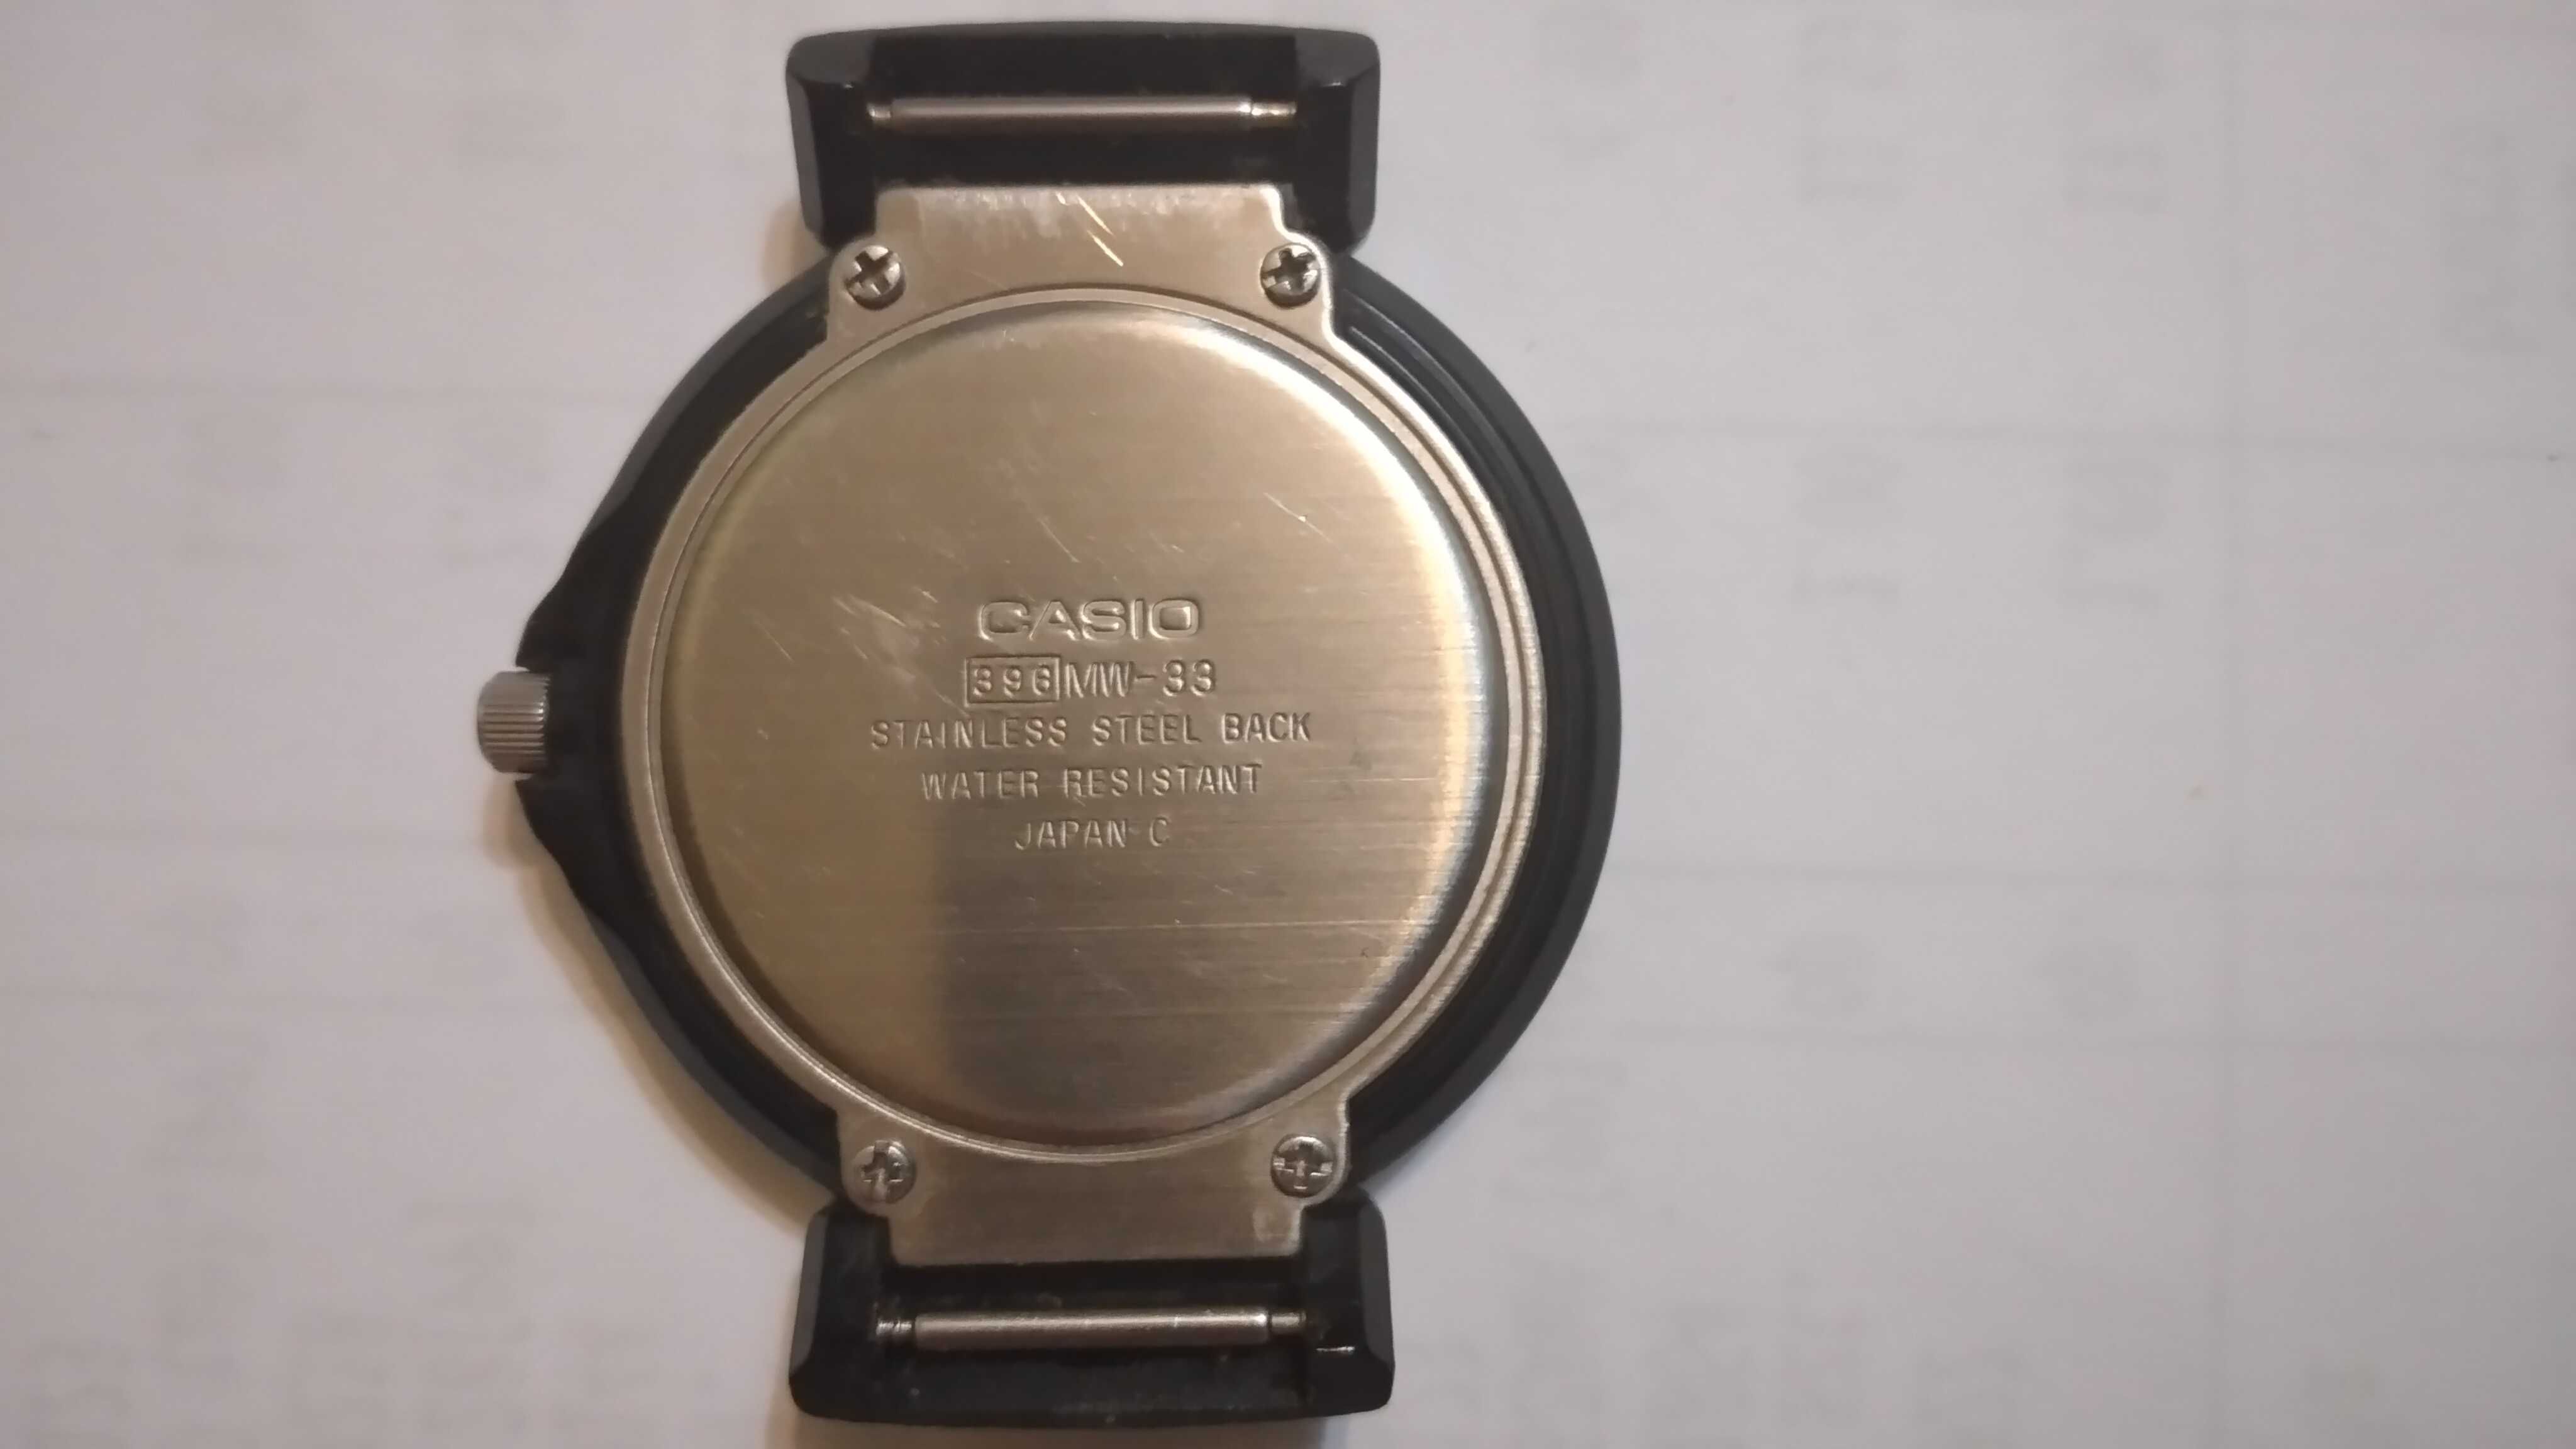 Zegarek "CASIO" 396MW-33